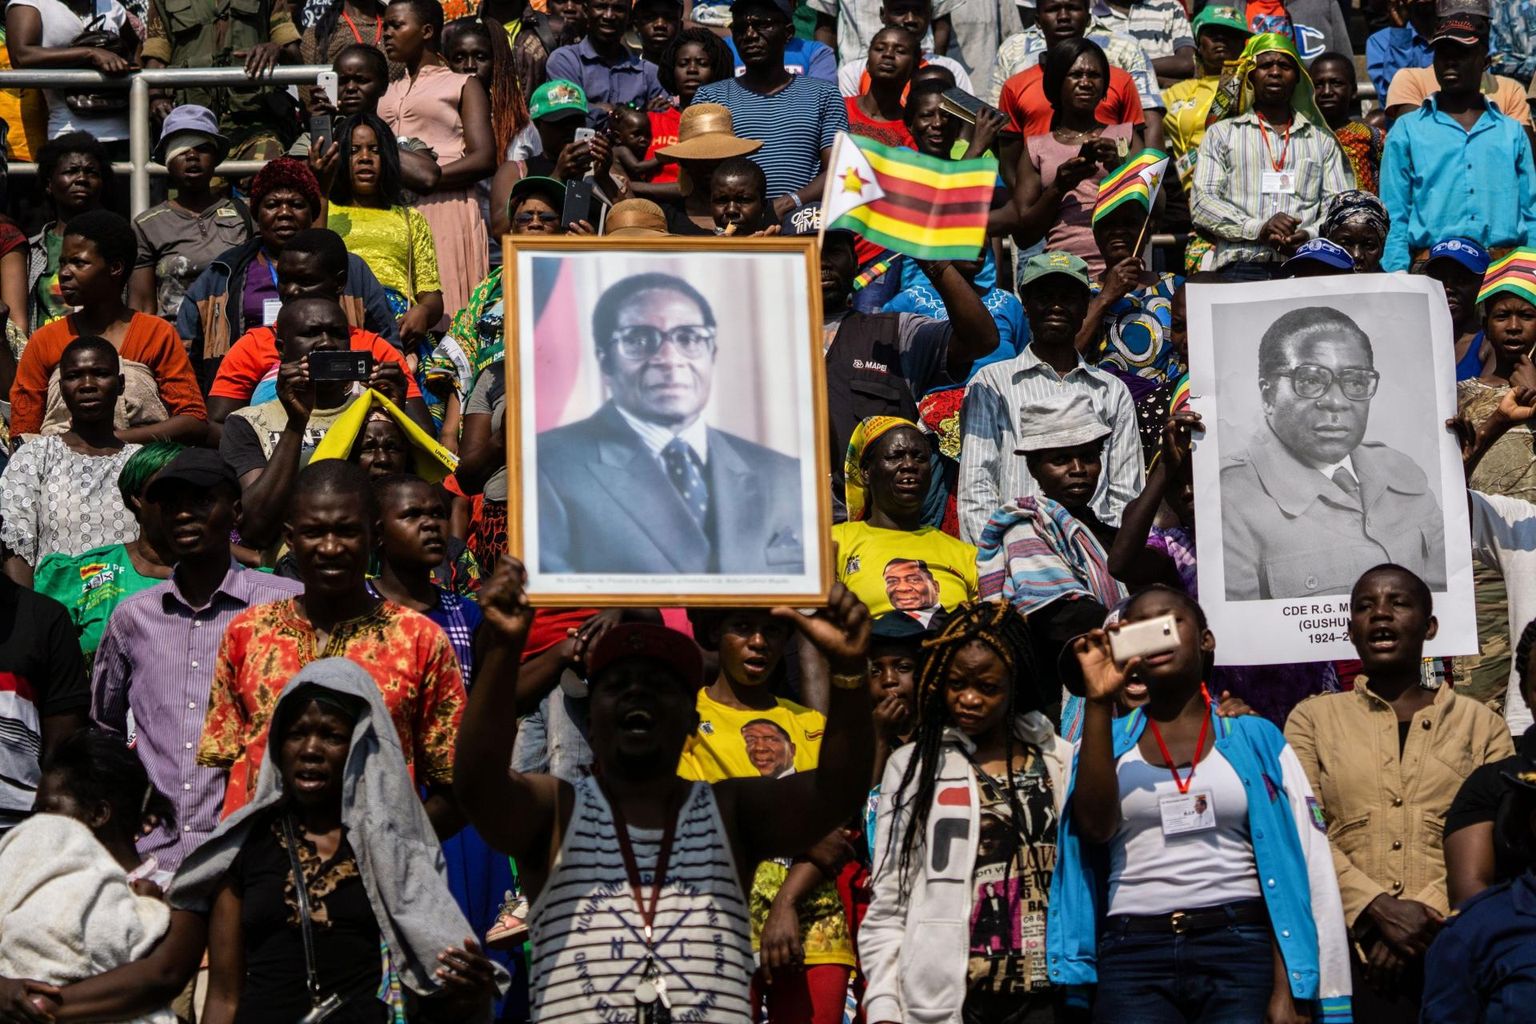 Leinajad laupäevasel ärasaatmisel Robert Mugabet kujutavate plakatitega.